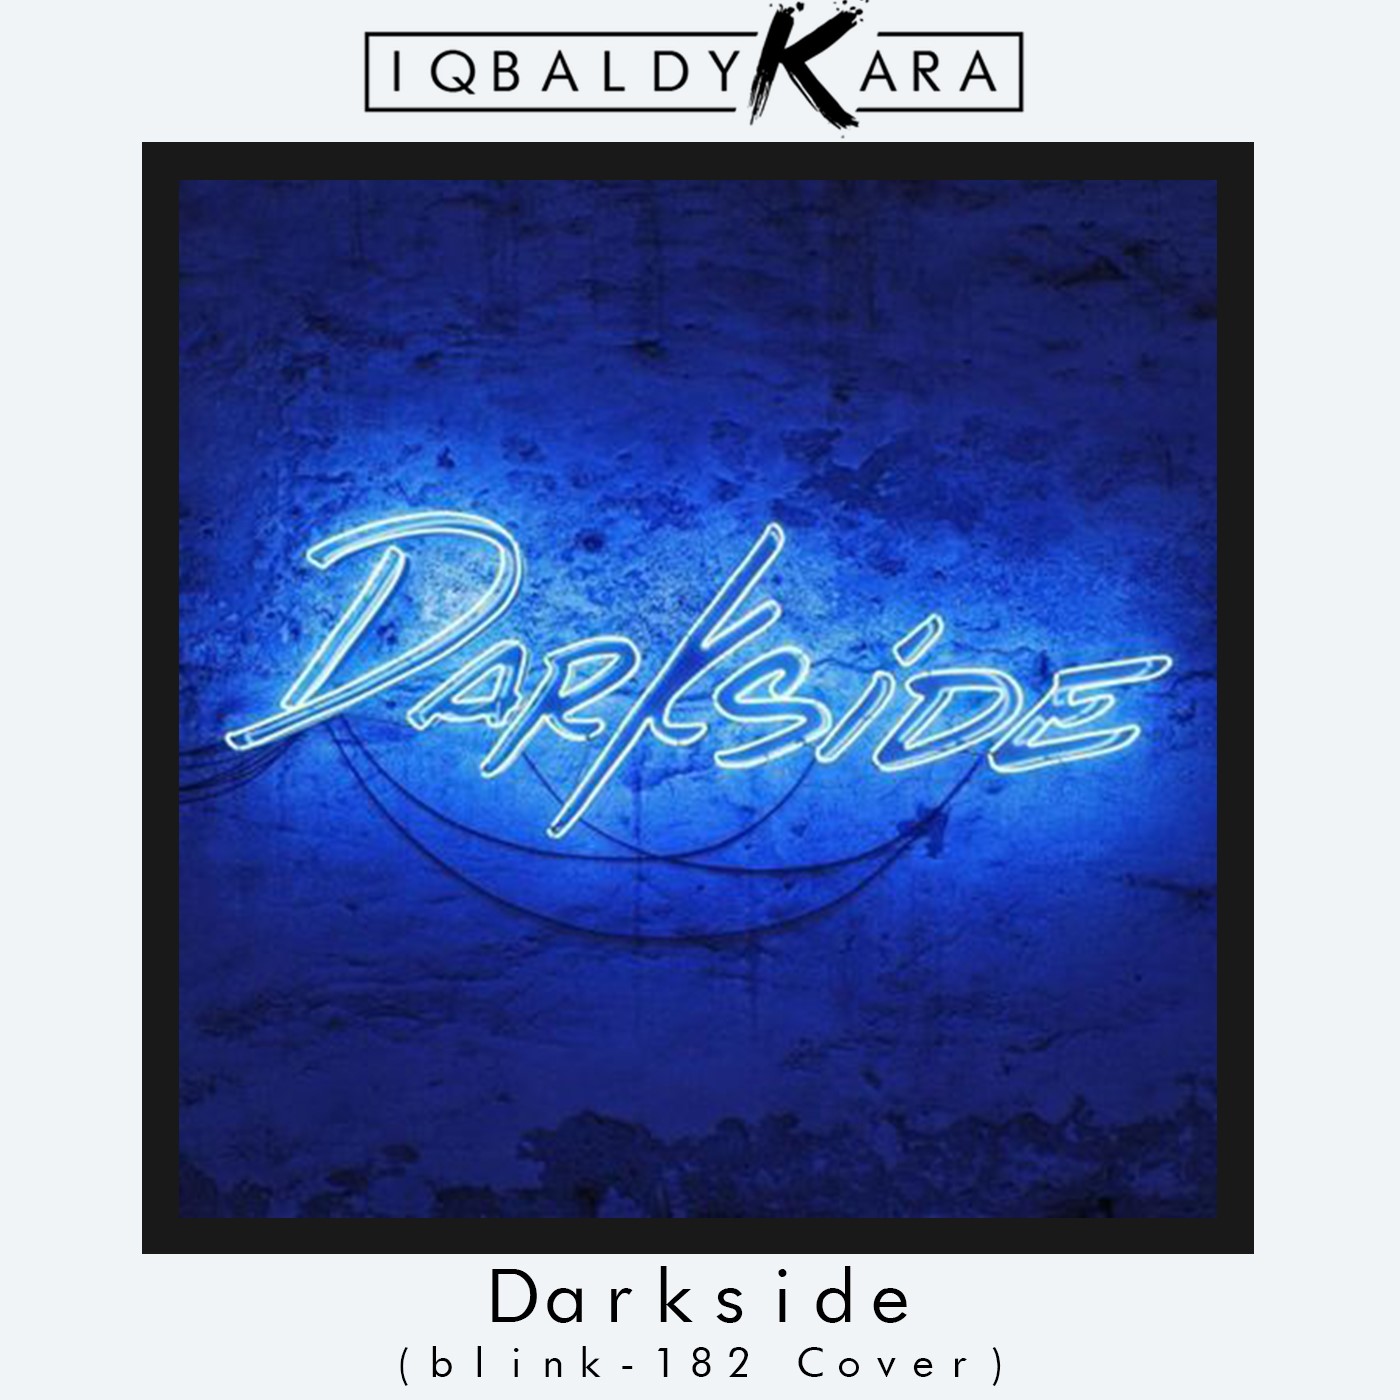 ડાઉનલોડ કરો Darkside (blink-182 Cover)